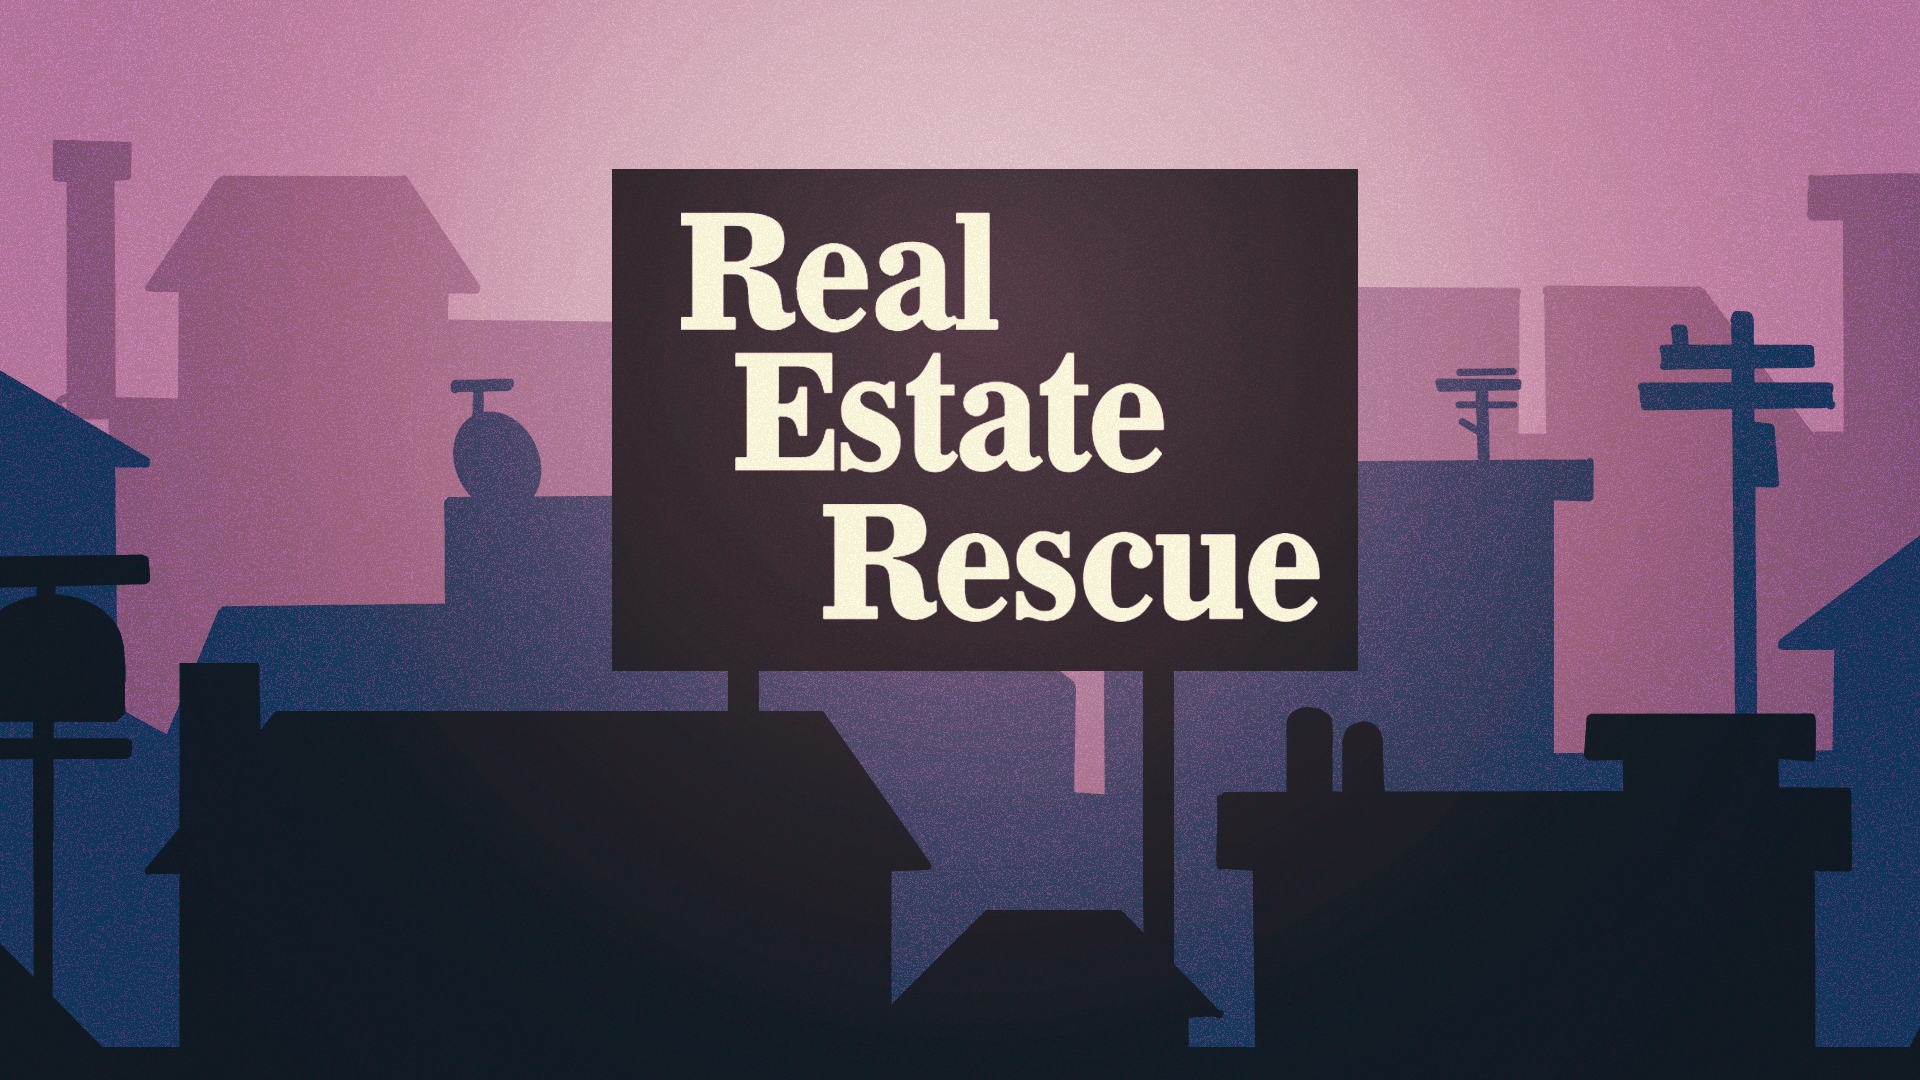 Real Estate Rescue